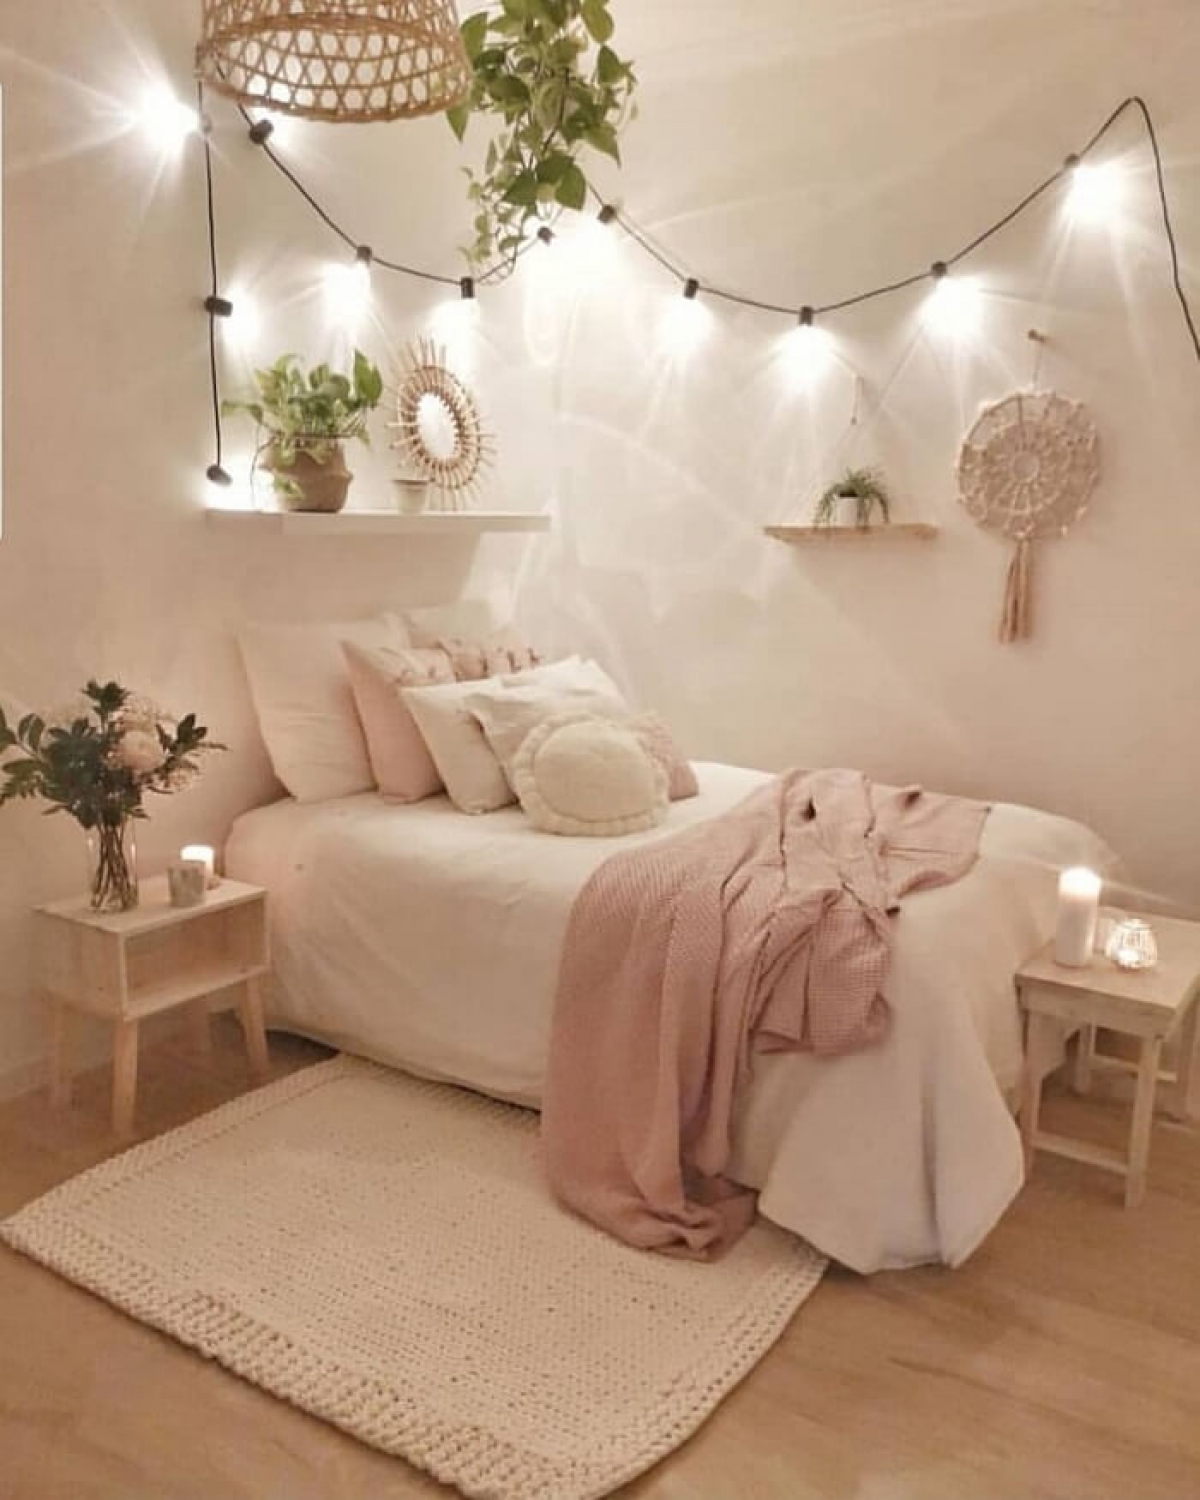 Tham khảo những ý tưởng hay để trang trí phòng ngủ xinh xắn